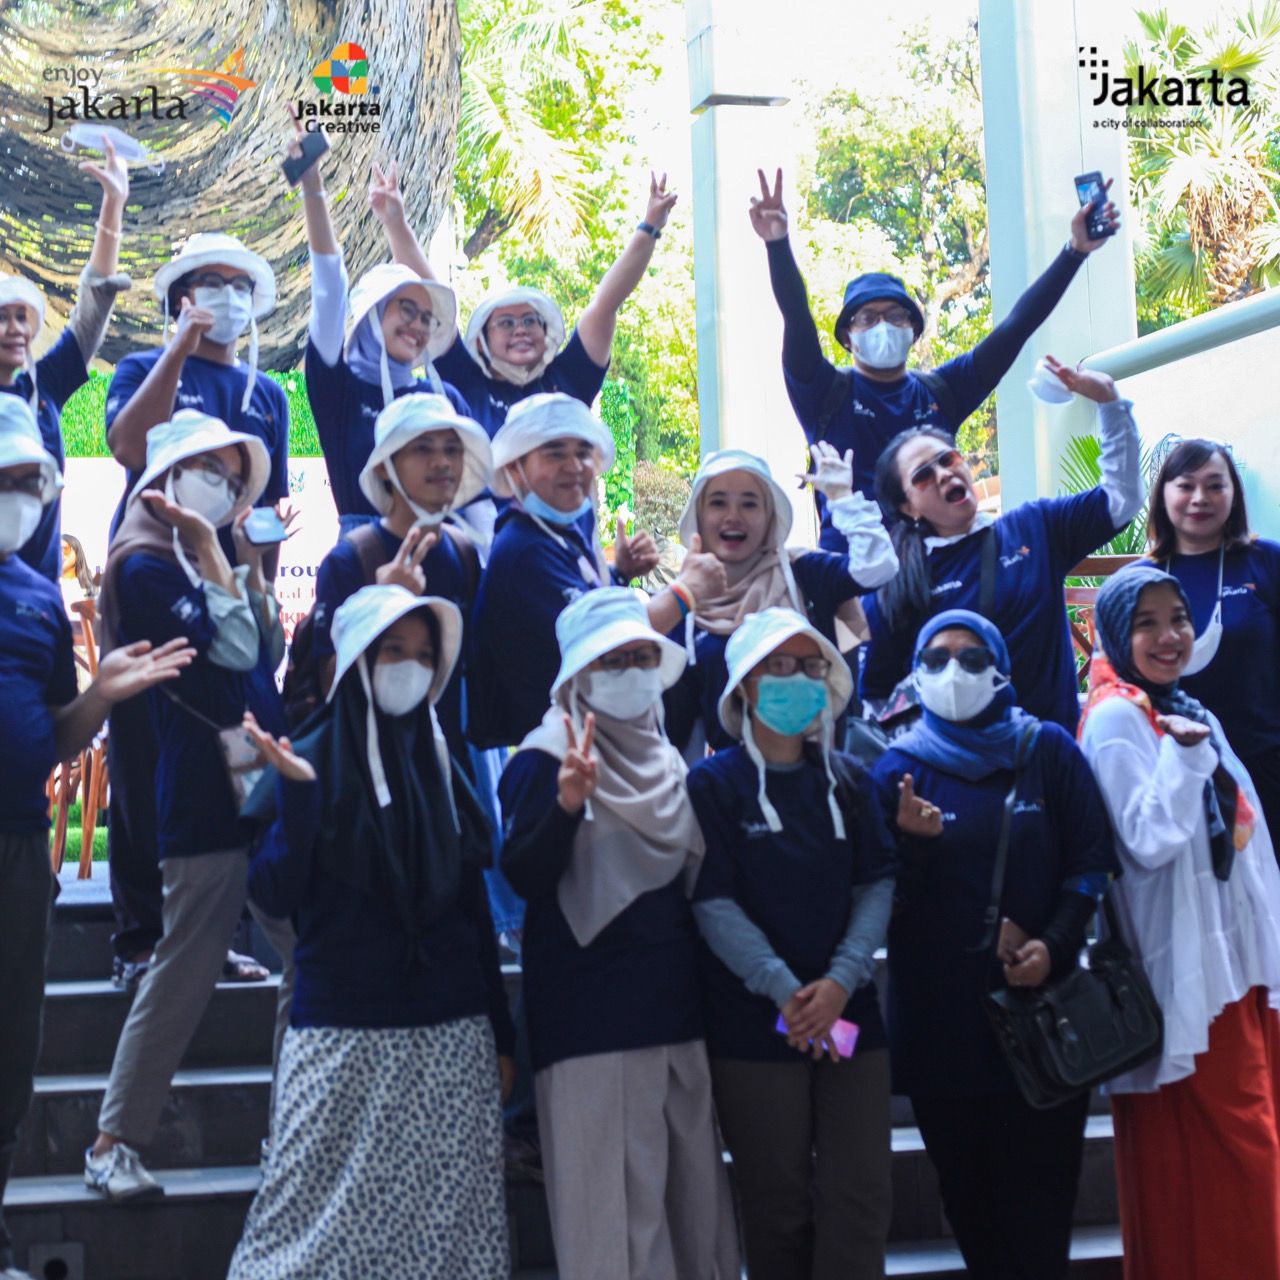 Sekelompok komunitas yang ikut walking tour dan jadikan jalan kaki sebagai budaya baru di Jakarta